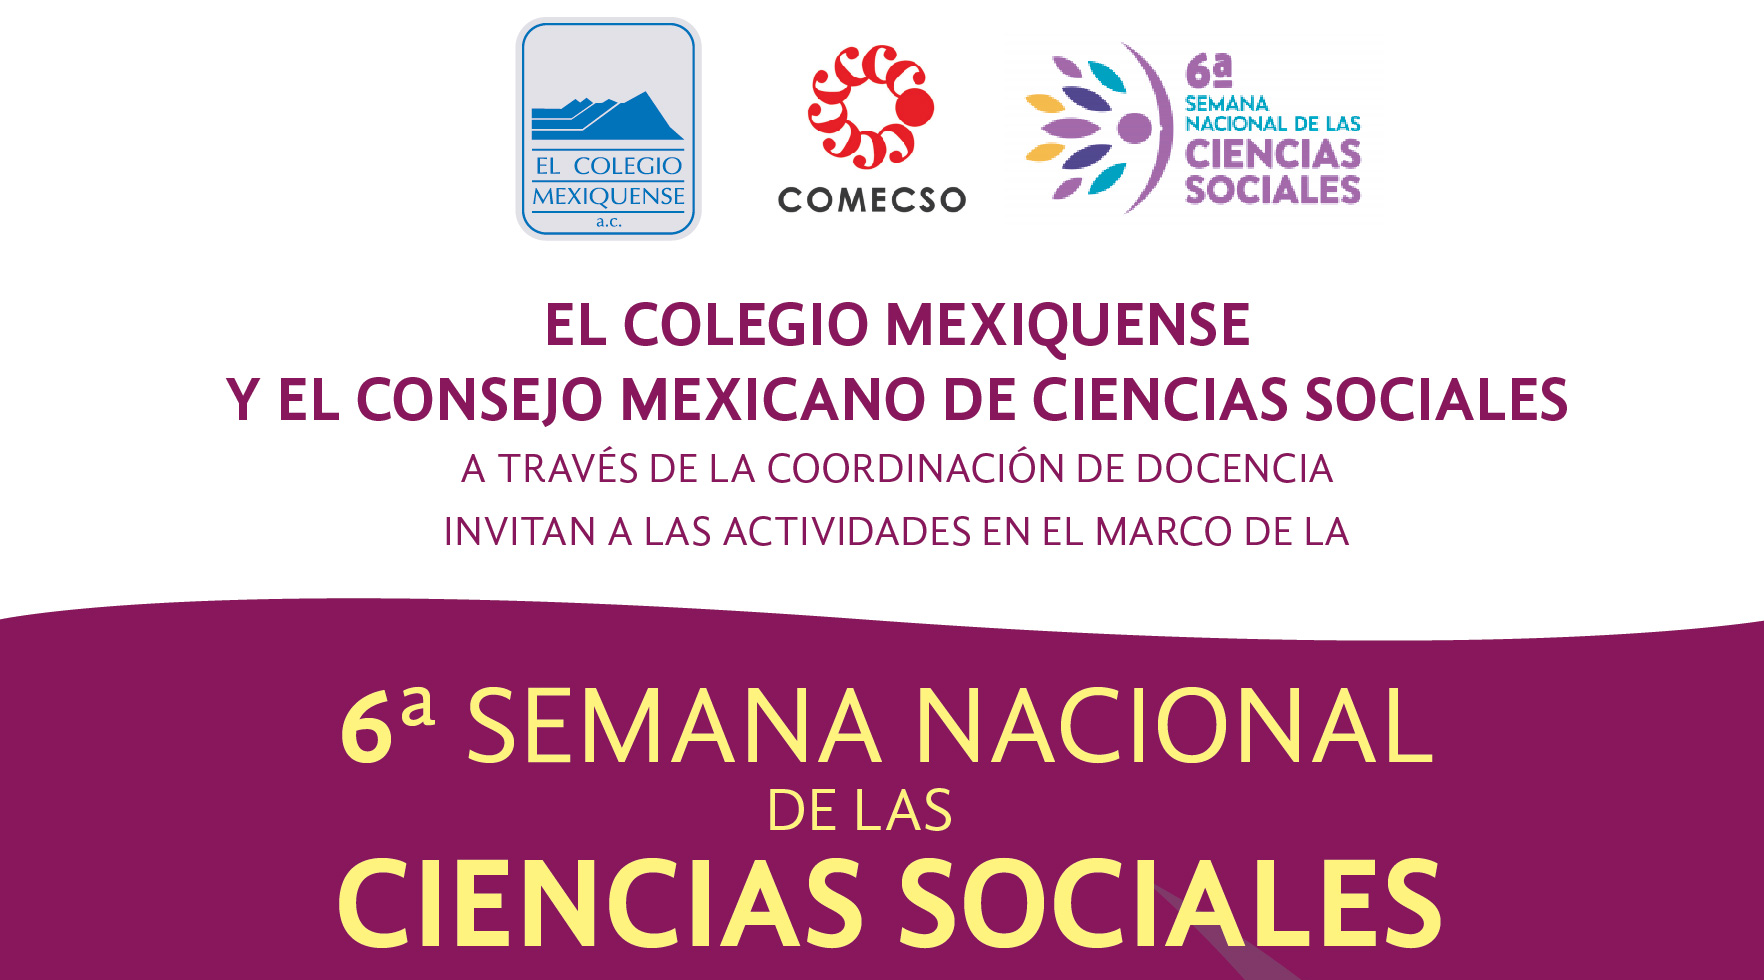 6a. Semana Nacional de las Ciencias Sociales